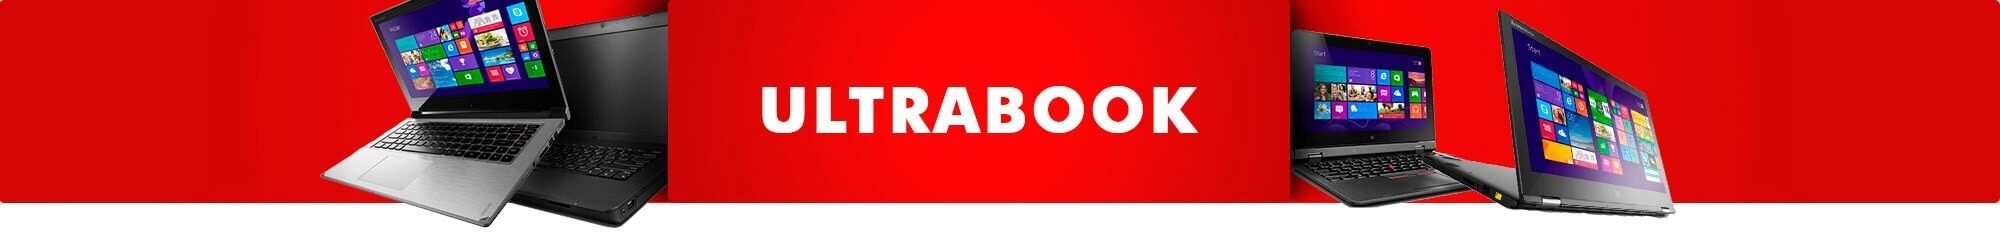 Ultrabook: Comprari3, i5, i7 e mais em oferta | Saldão da Informática